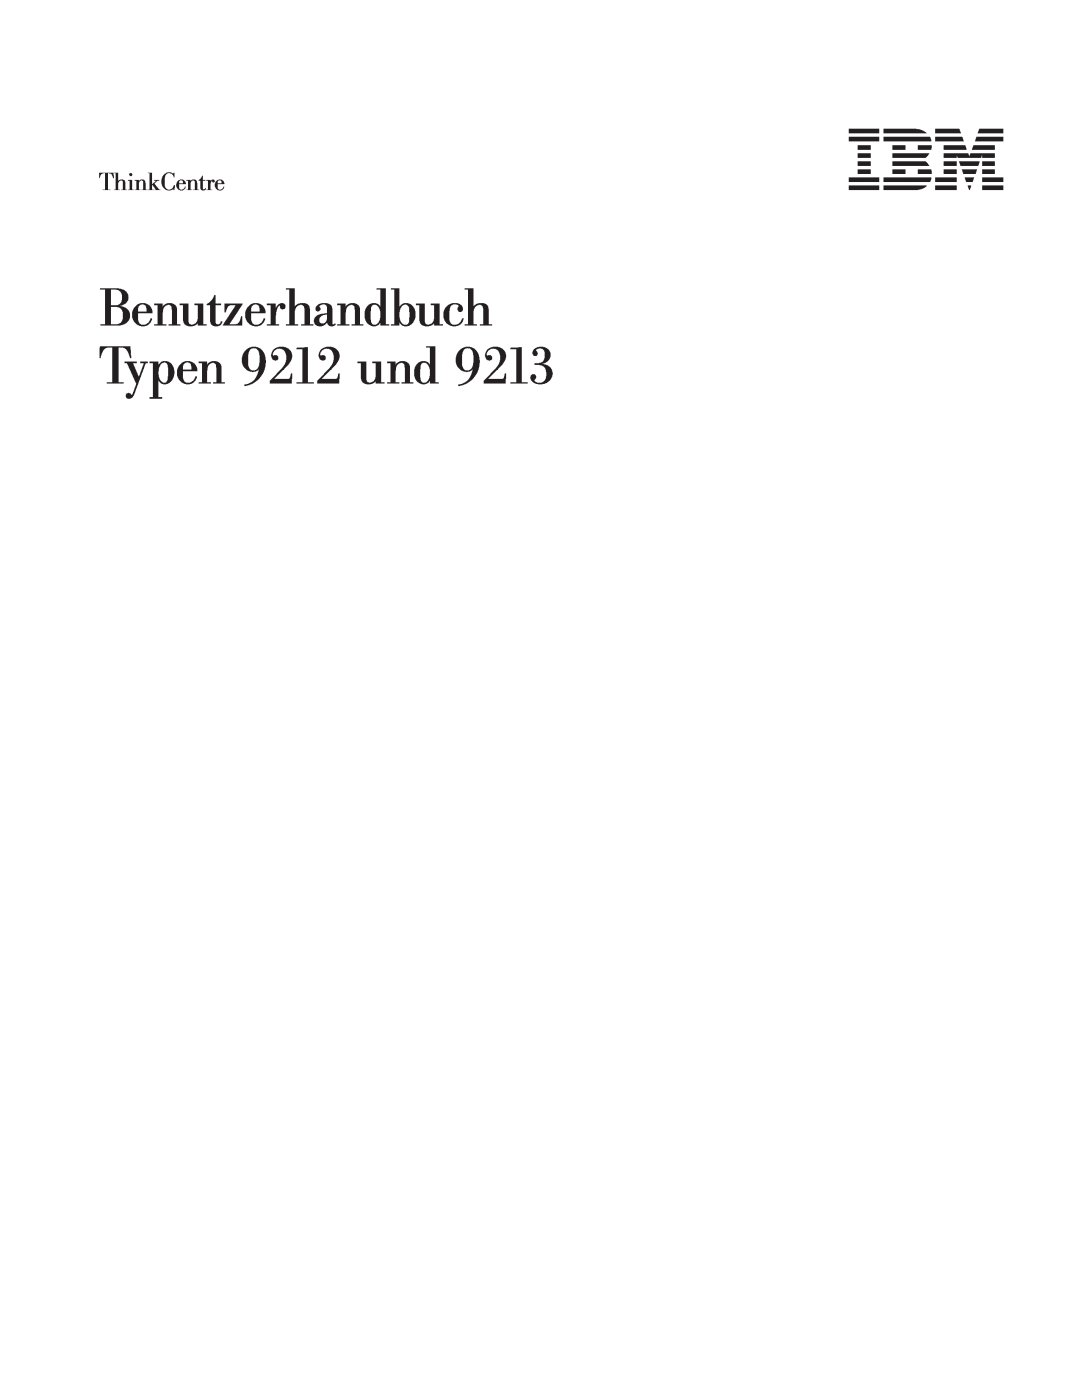 IBM 9213 manual Benutzerhandbuch Typen 9212 und, ThinkCentre 